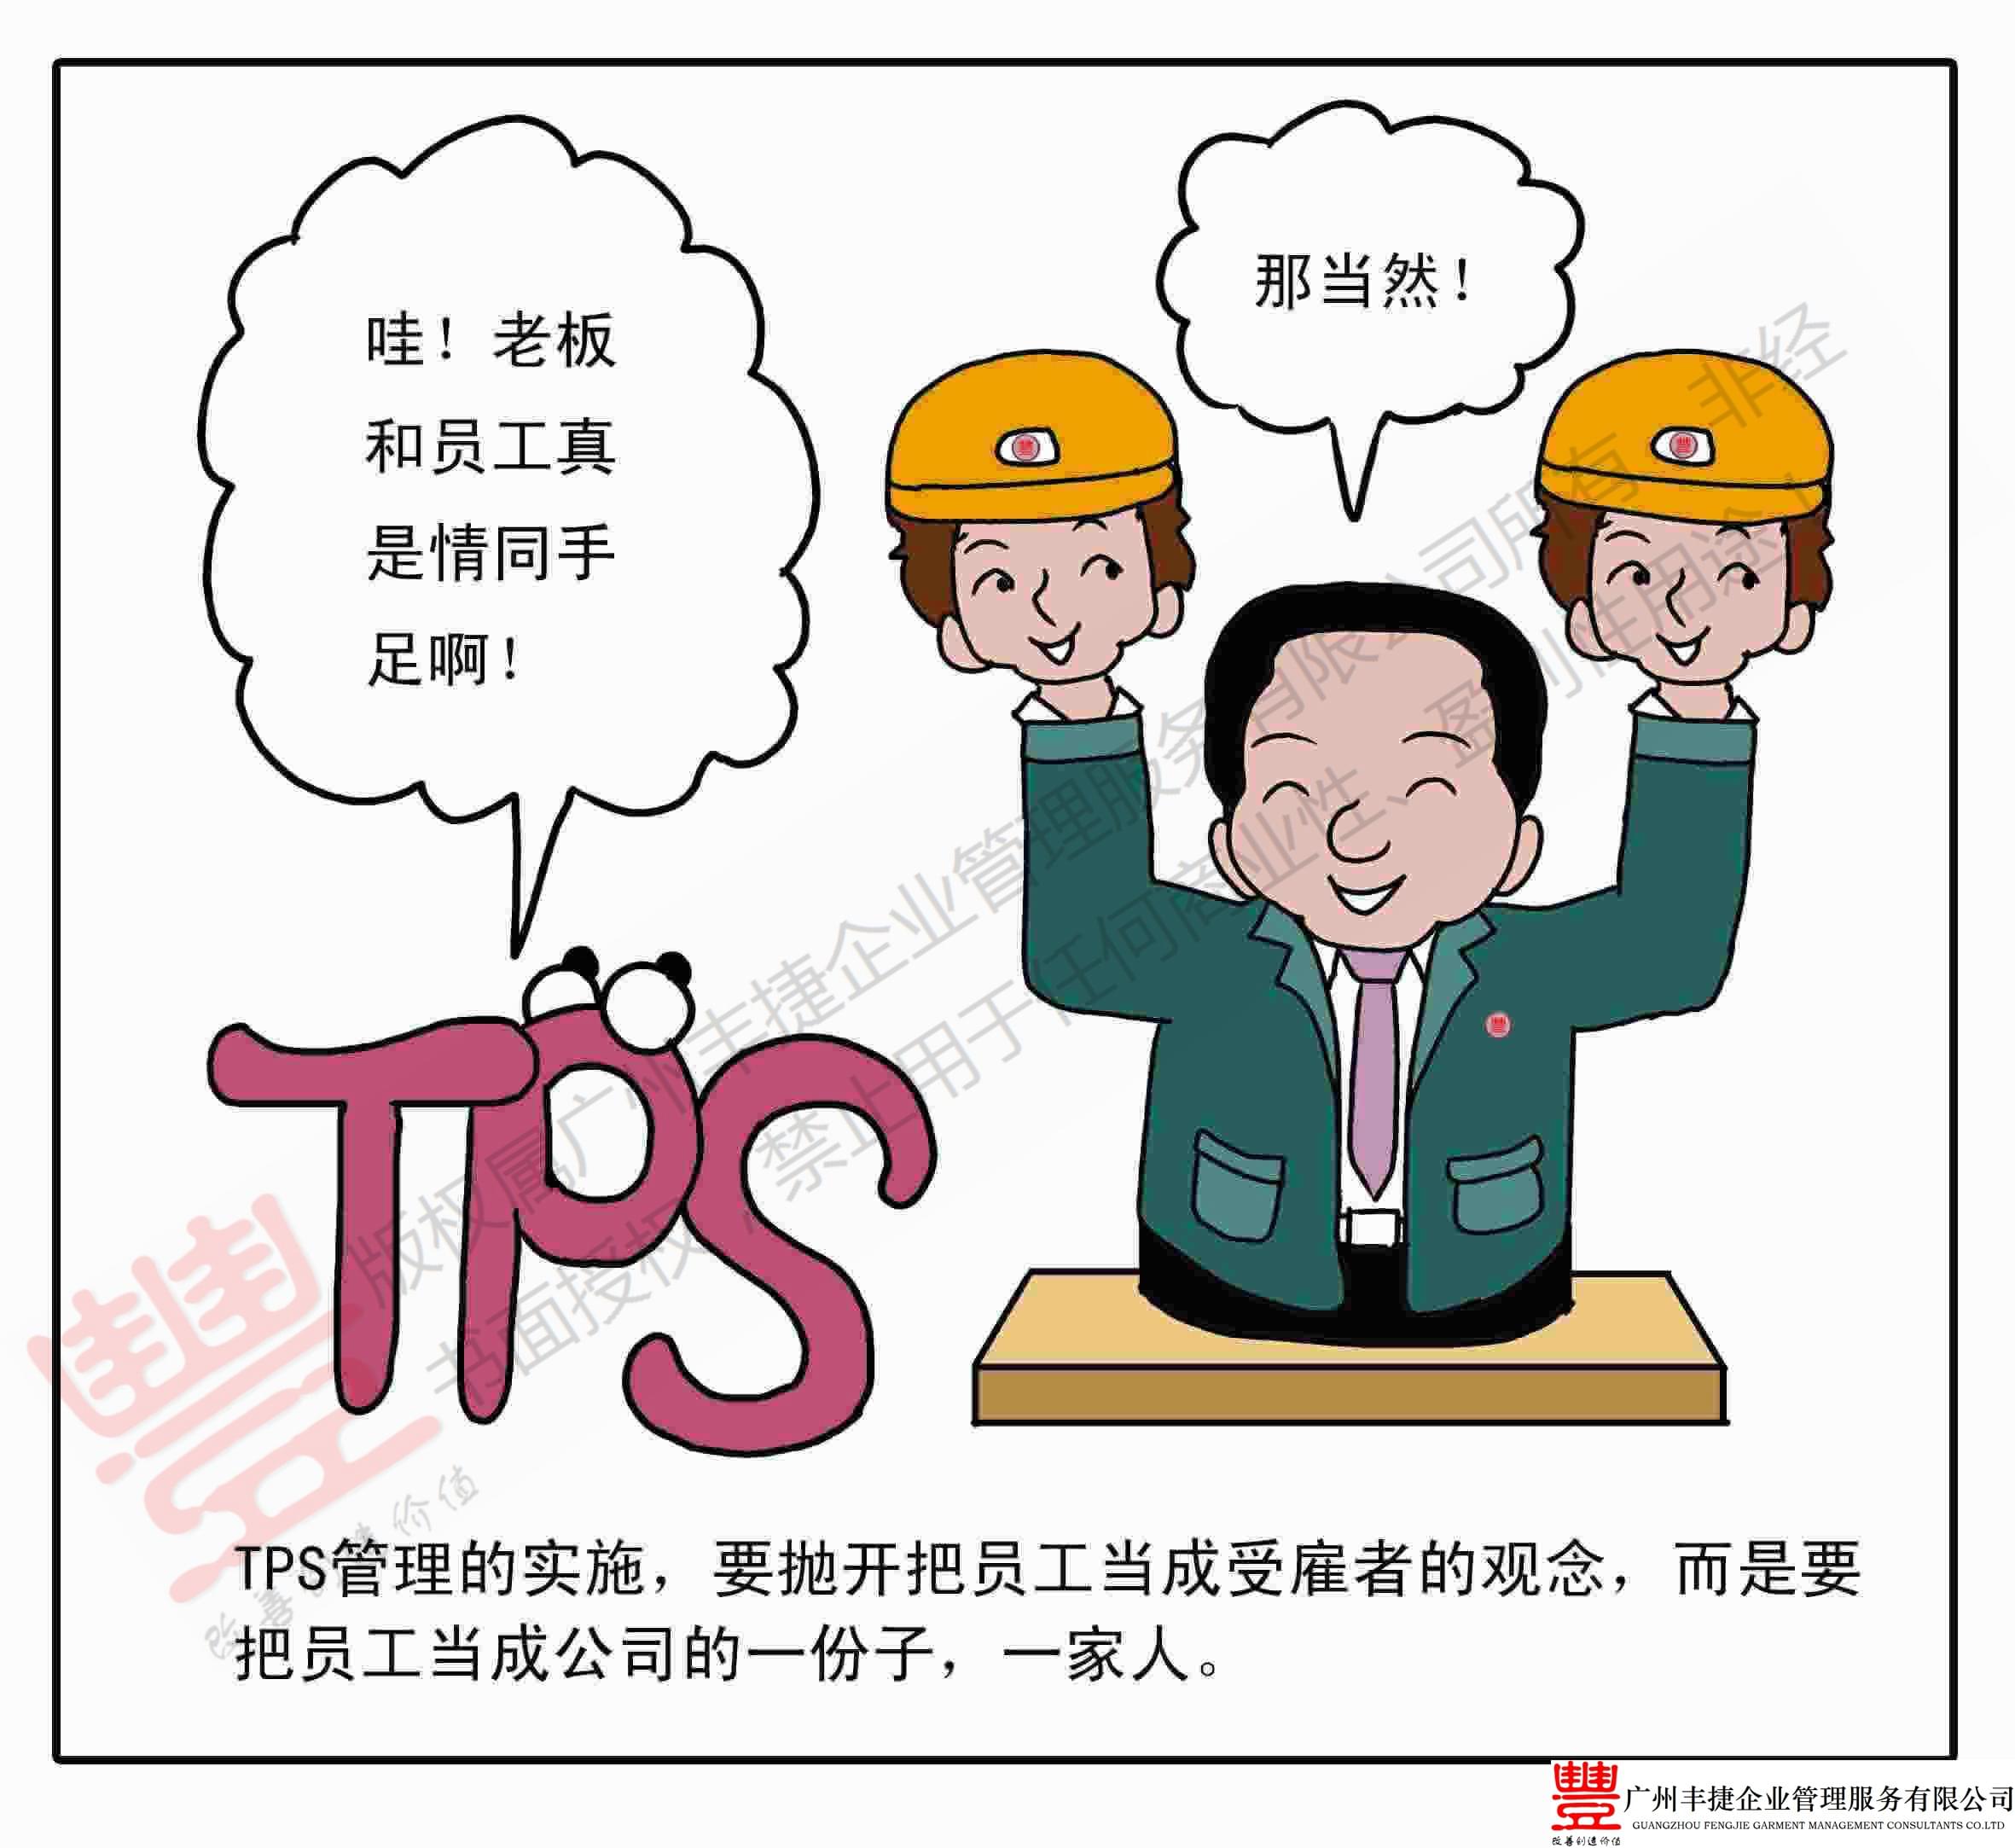 TPS经营理念,丰捷精益管理漫画,丰捷服装精益生产改善项目,广州丰捷企业管理服务有限公司